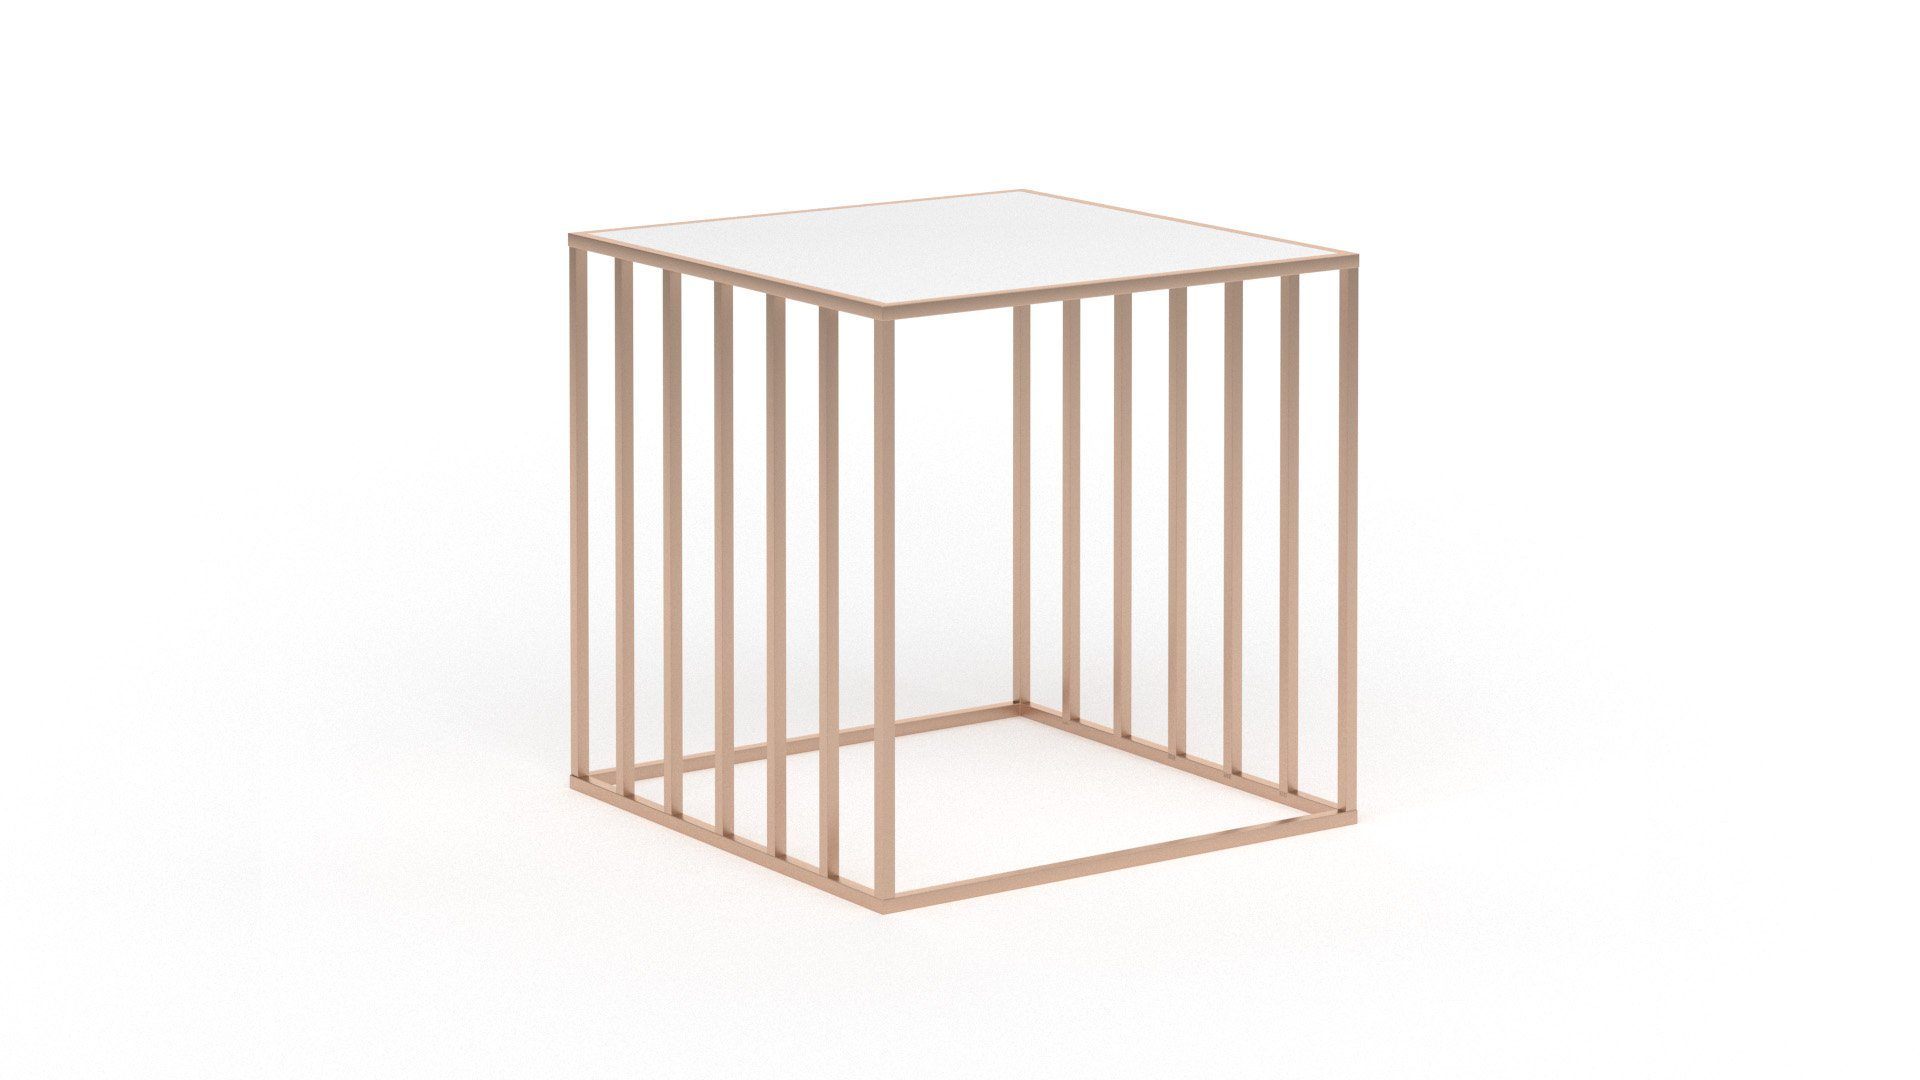 Siblo Nachttisch Metall-Nachttisch Carmen im modernen Stil - Tischplatte aus Plexiglas - minimalistischer Nachttisch - bunter Nachttisch - Metall - modernes Schlafzimmer